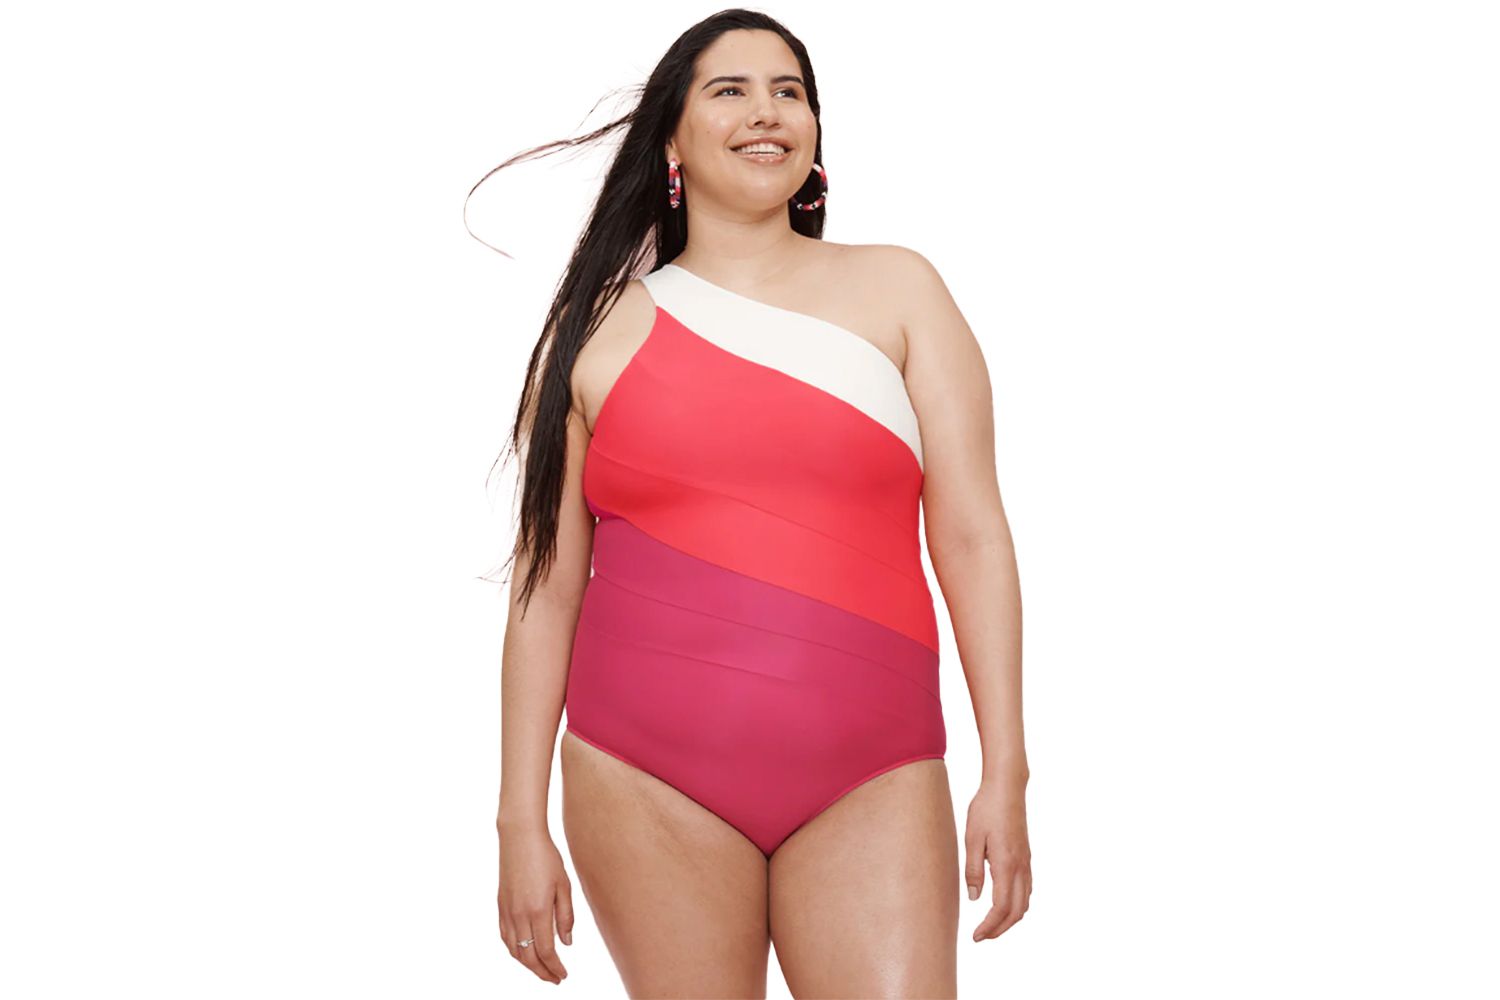 The Sidestroke Swimsuit